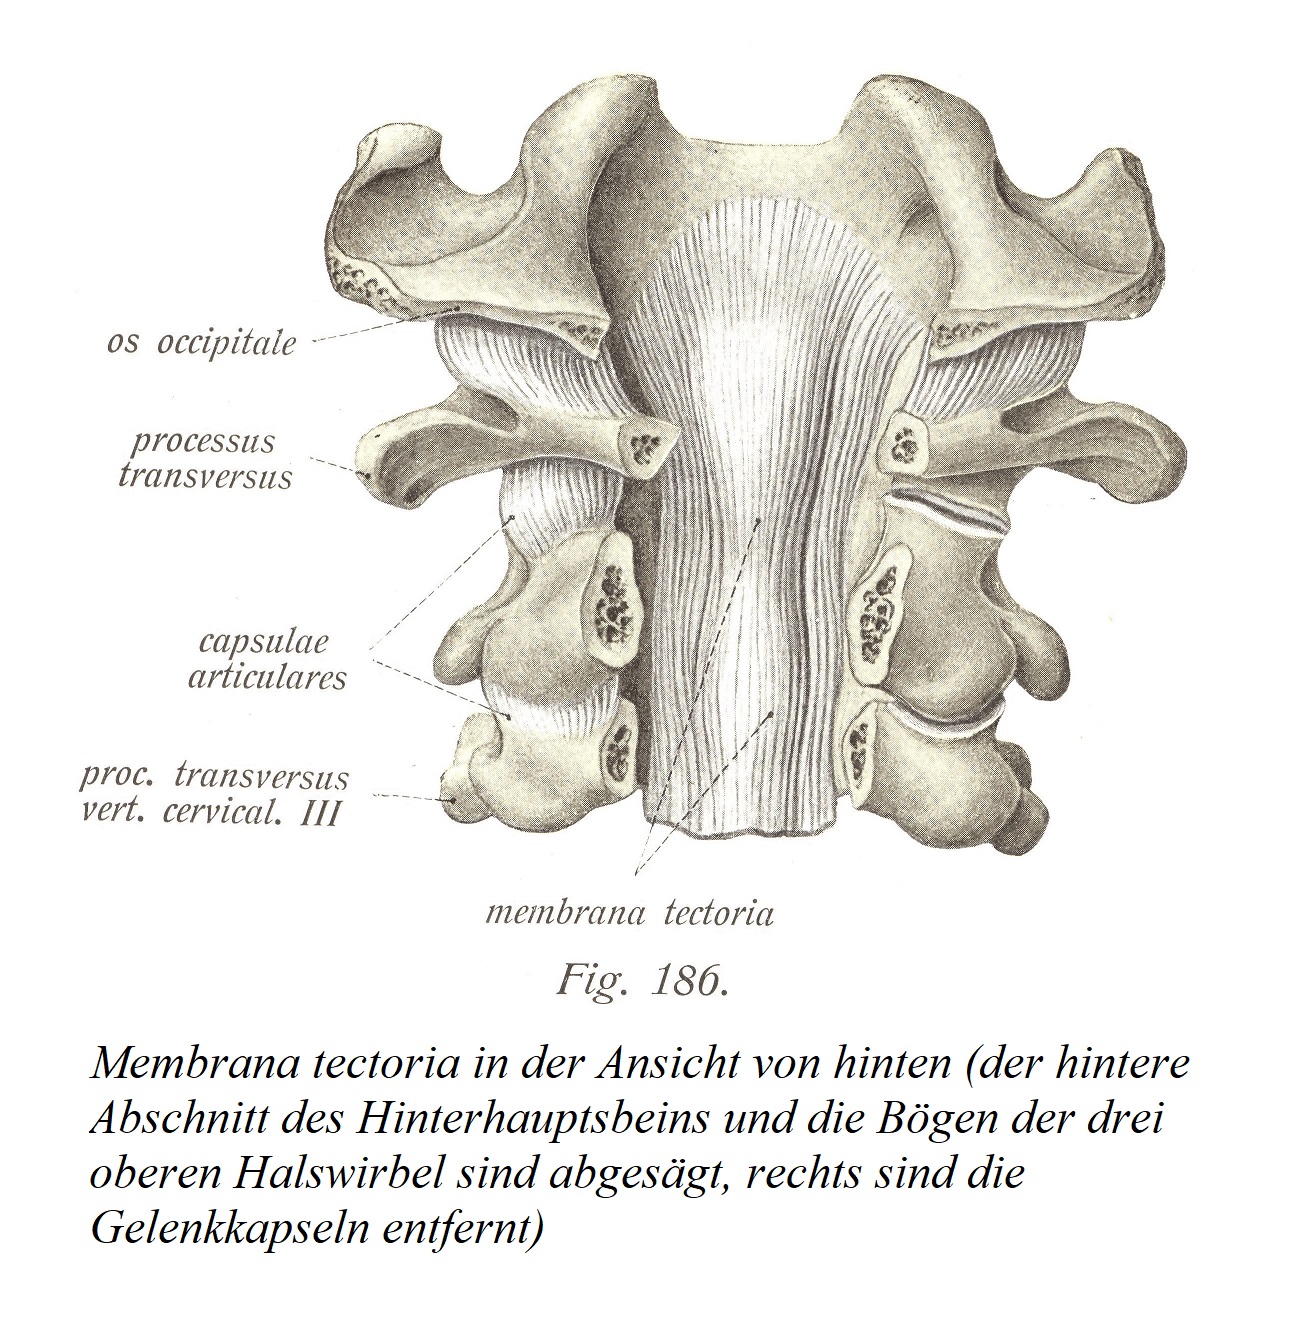 Membrana tectoria в проекции сзади (отпилены задняя часть затылочной кости и дуги трех верхних шейных позвонков, удалены суставные капсулы справа).